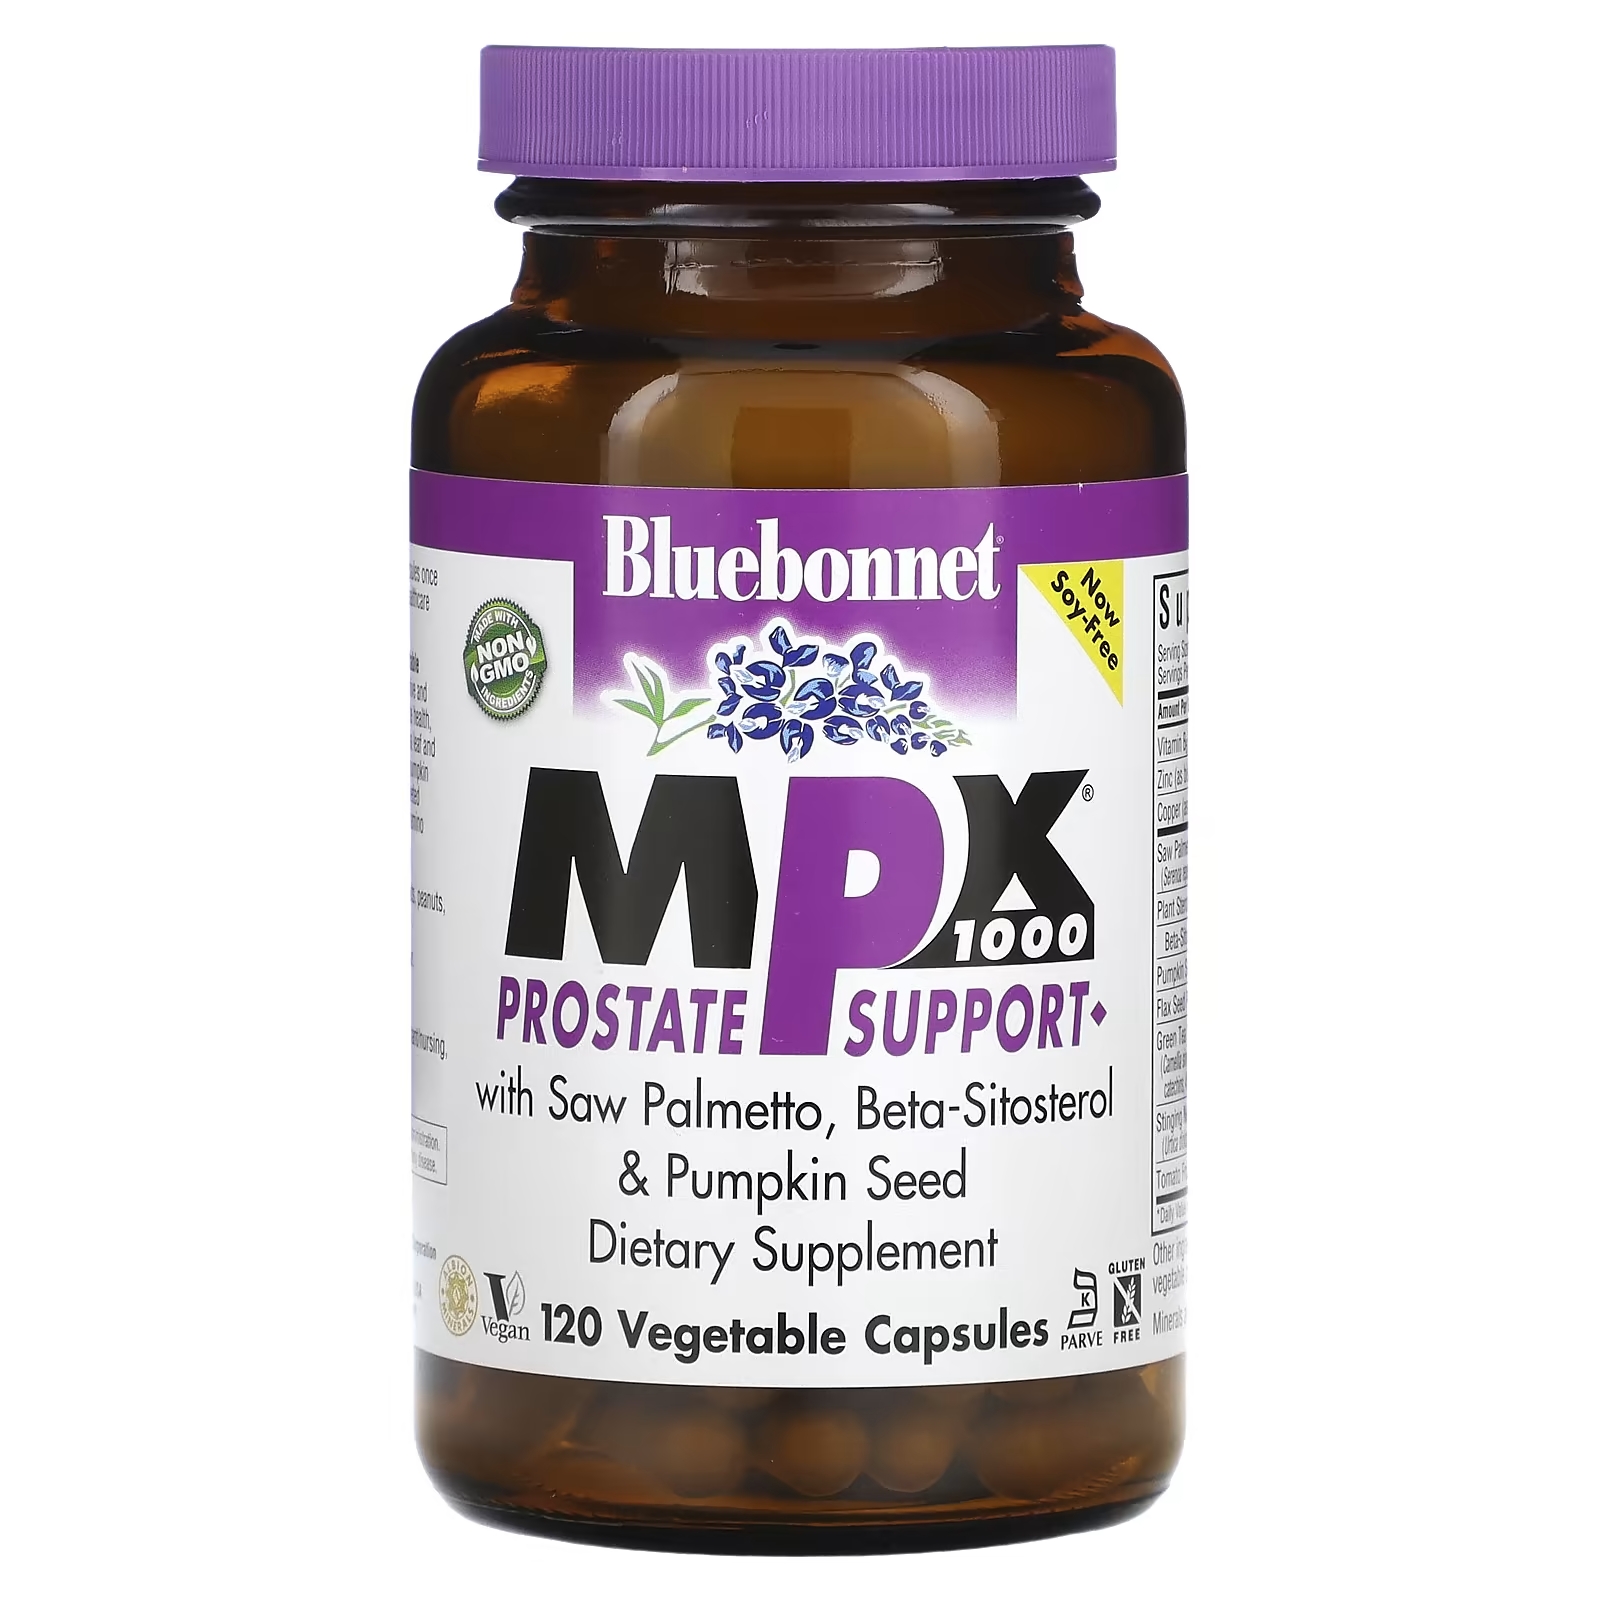 Bluebonnet Nutrition MPX 1000 поддержка предстательной железы, 120 вегетарианских капсул mpx 1000 поддержка предстательной железы 120 капсул bluebonnet nutrition